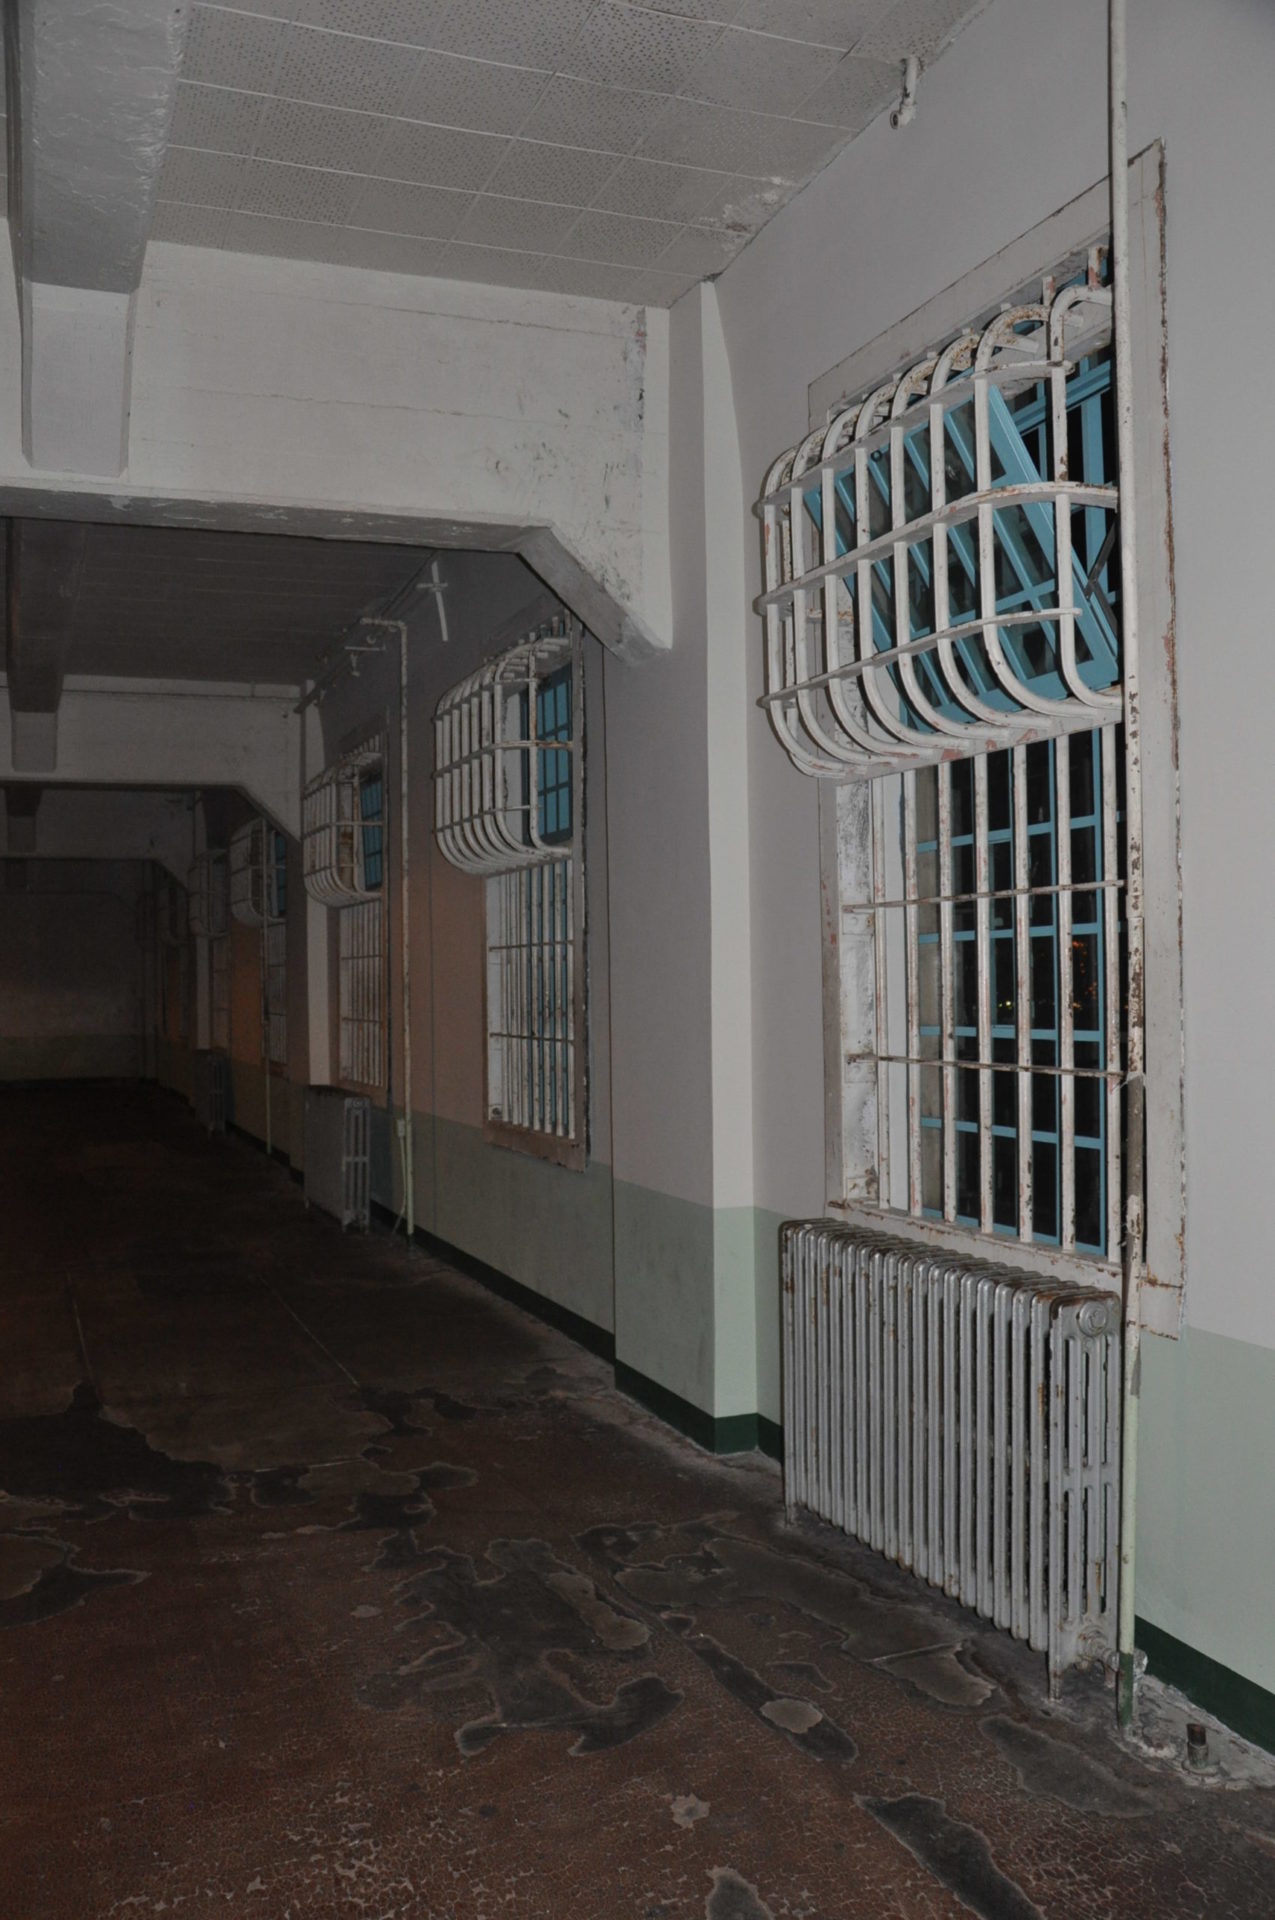 Image from the Gallery: Alcatraz – San Francisco, CA